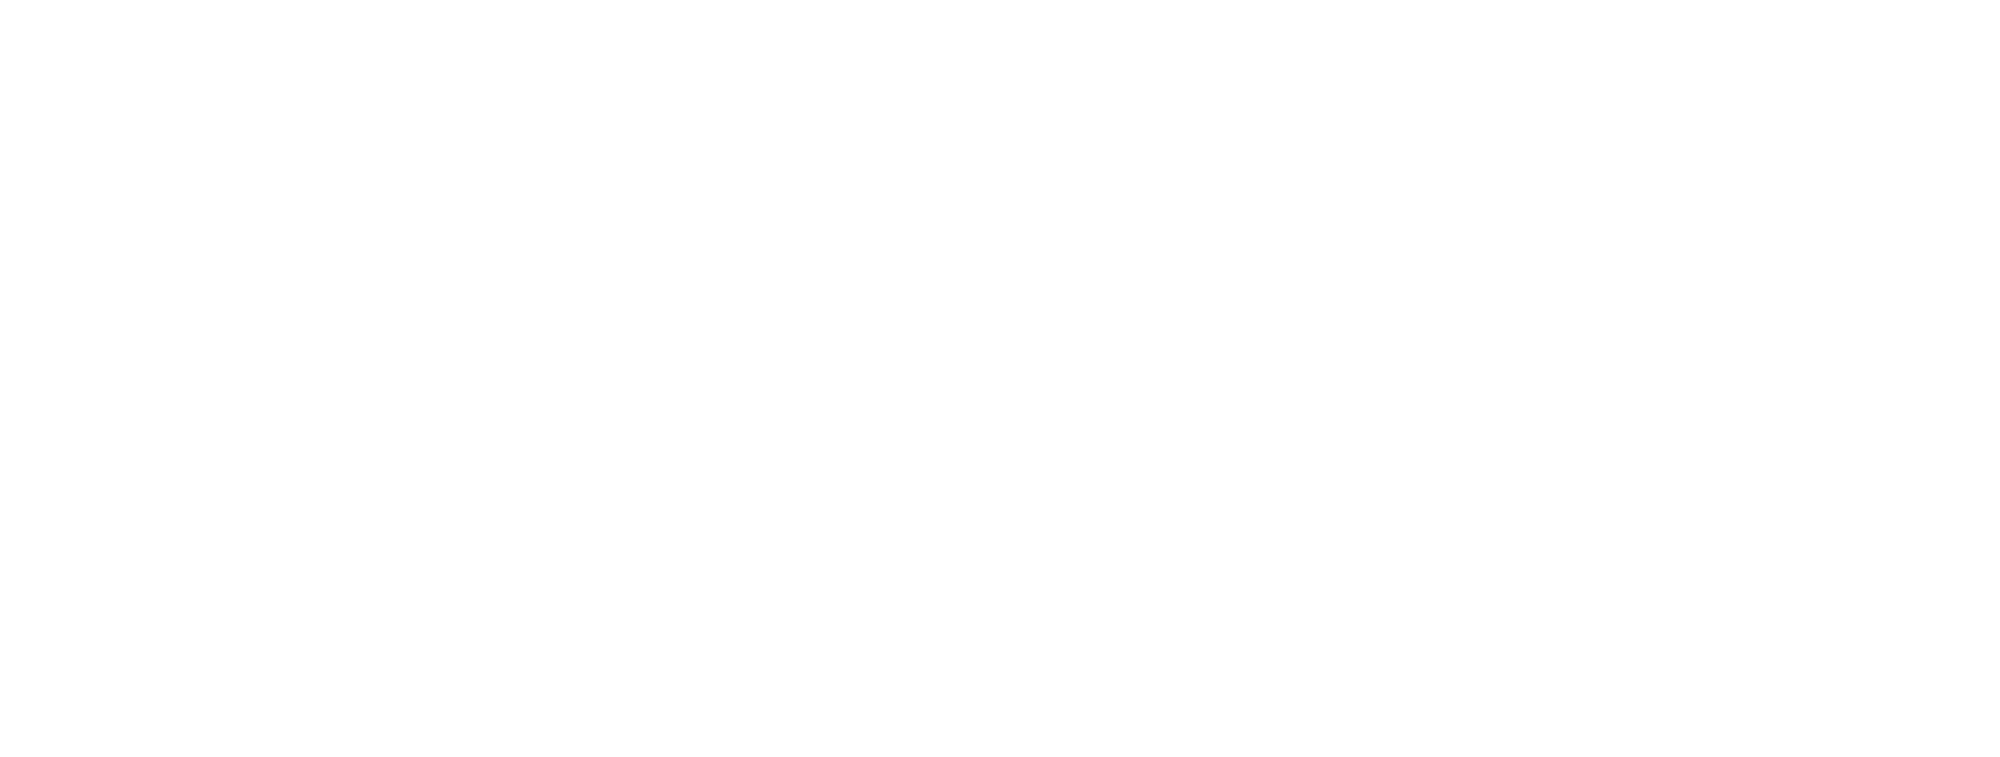 Public Money - Public Code